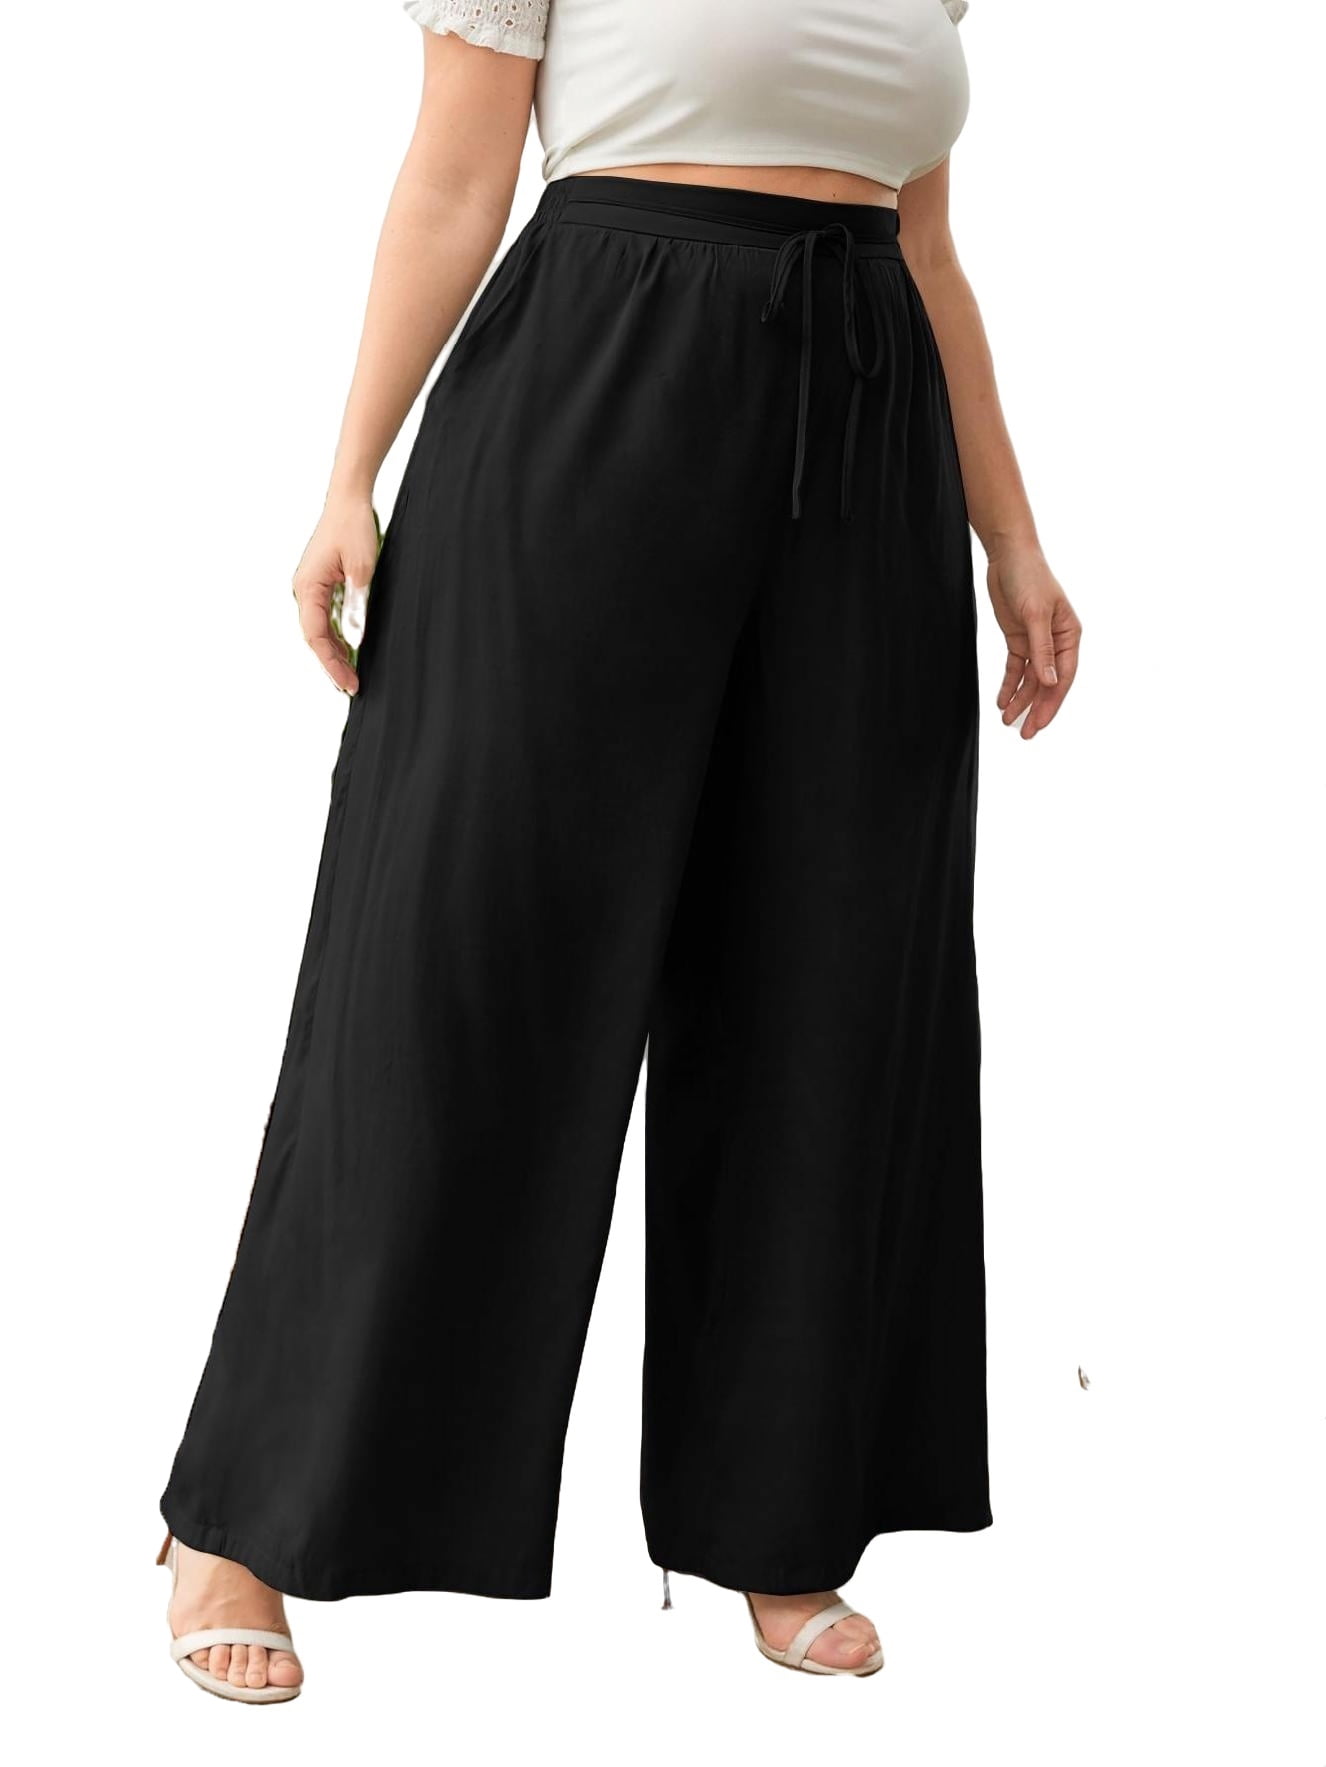 Casual Solid Wide Leg Black Plus Size Pants (Women's) - Walmart.com